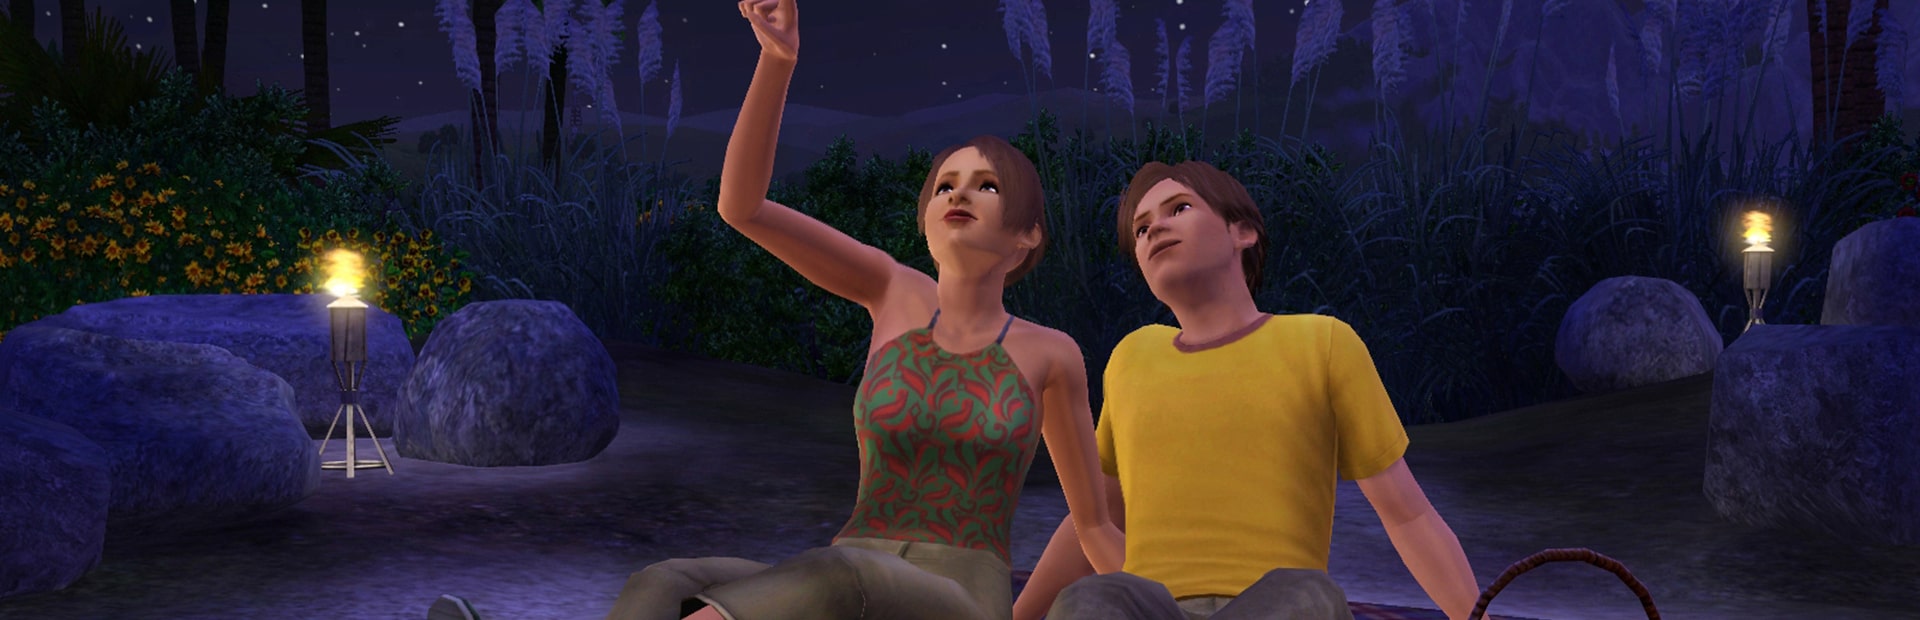 The Sims 3: Generations | PC Mac | Origin Digital Download | Wallpaper